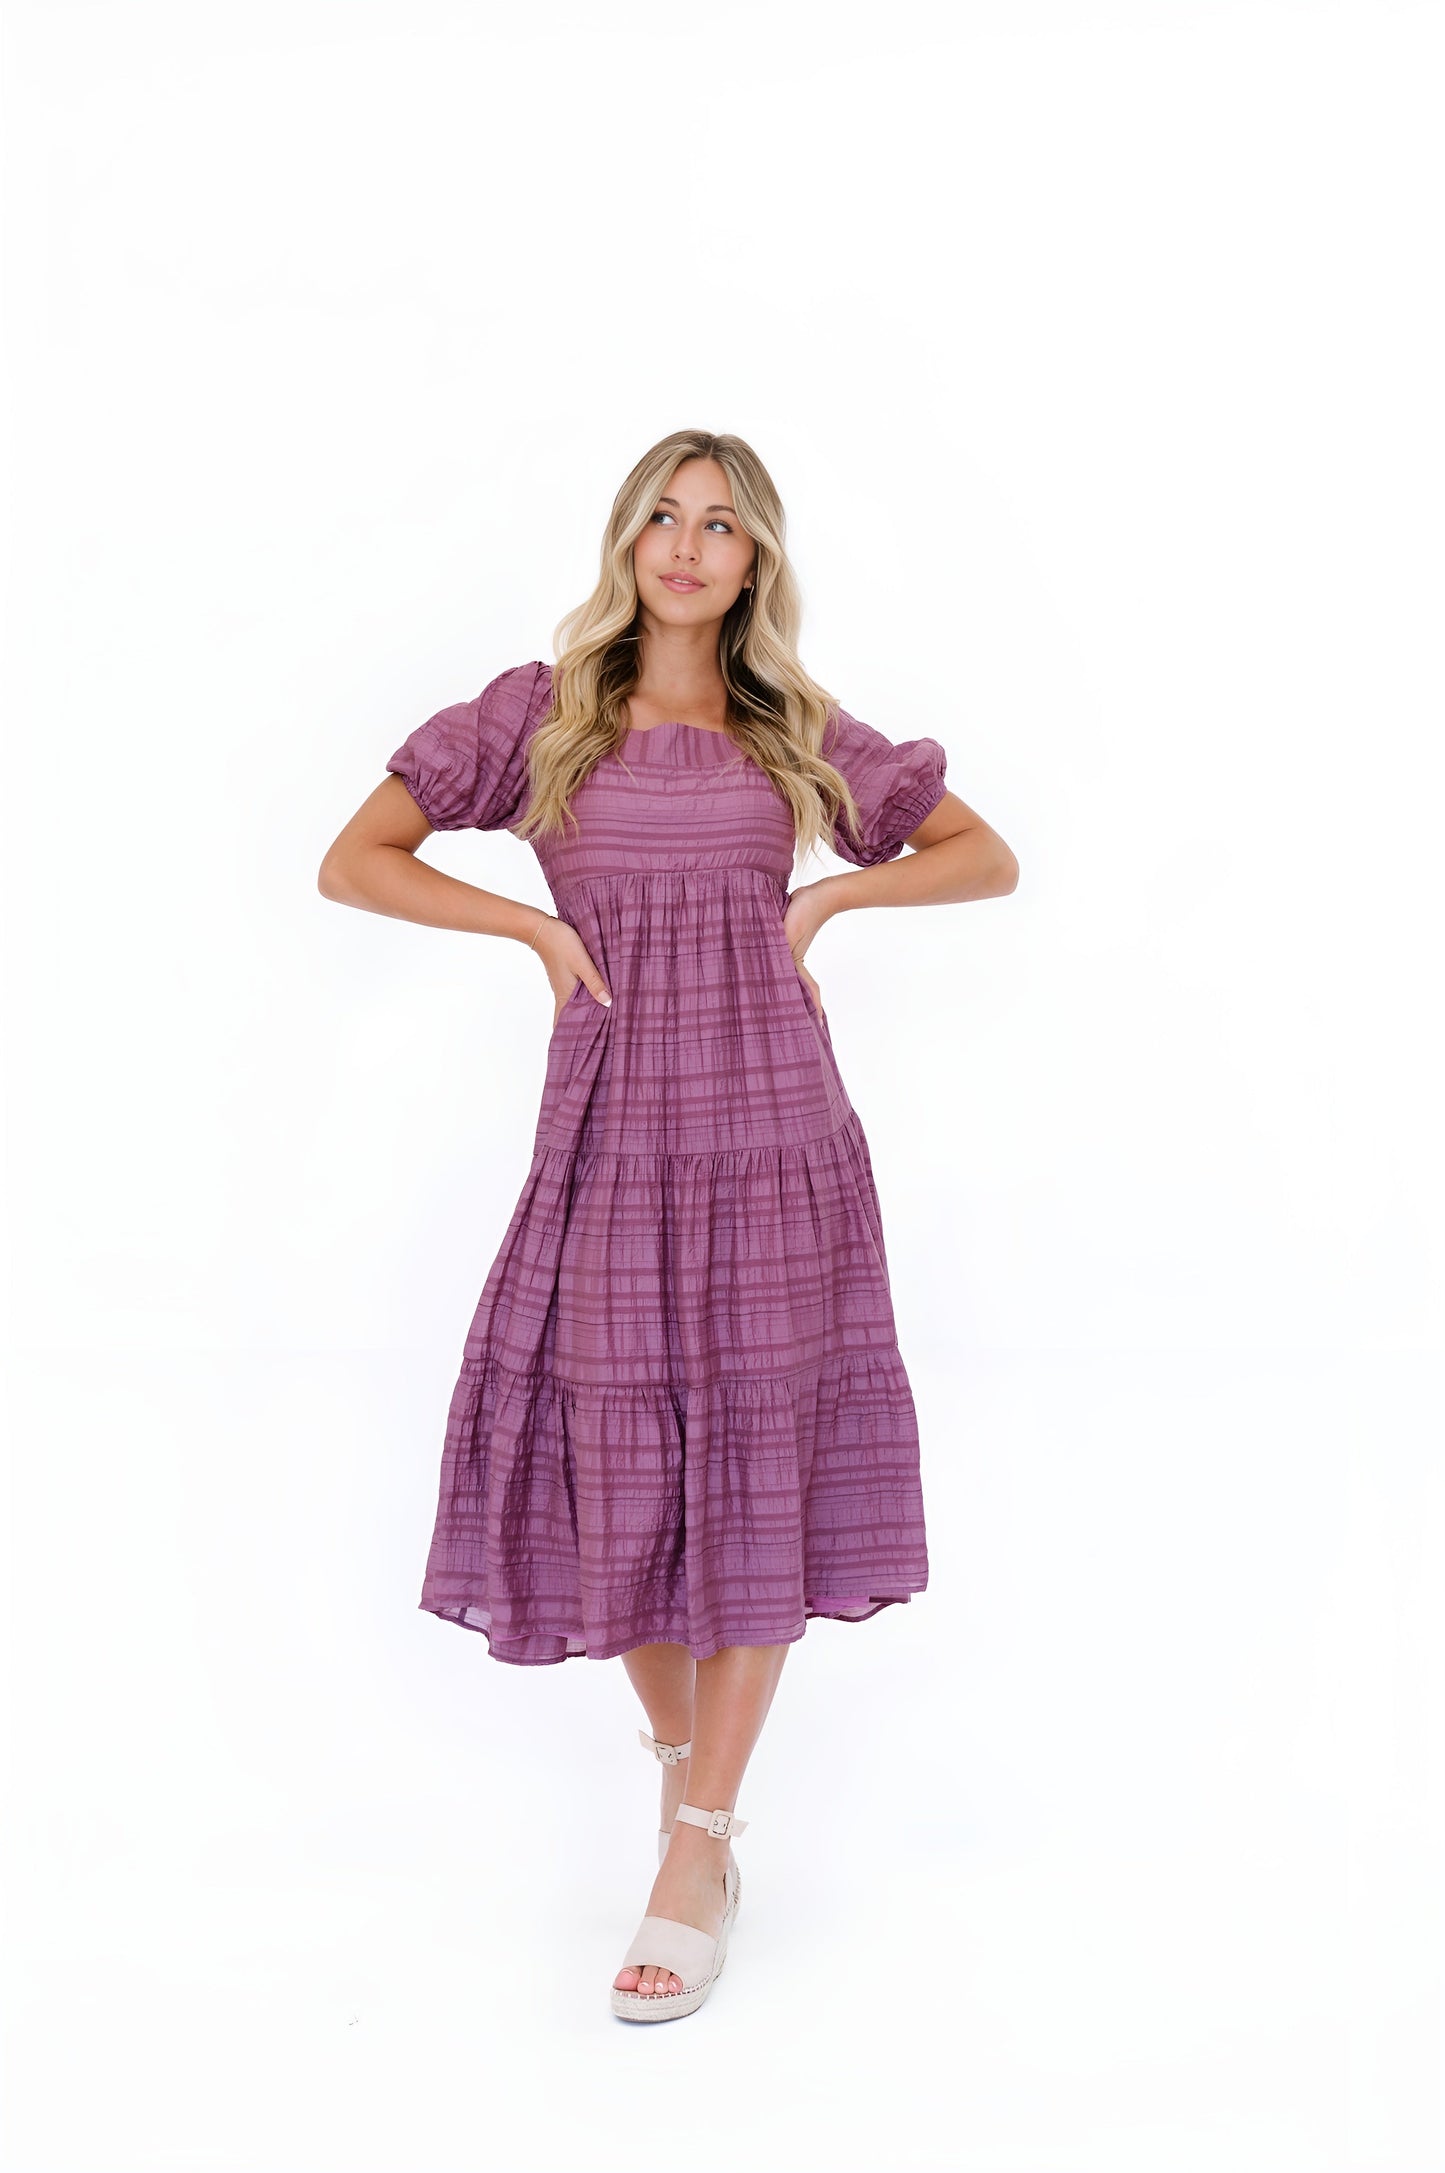 Carlile Dress in Purple